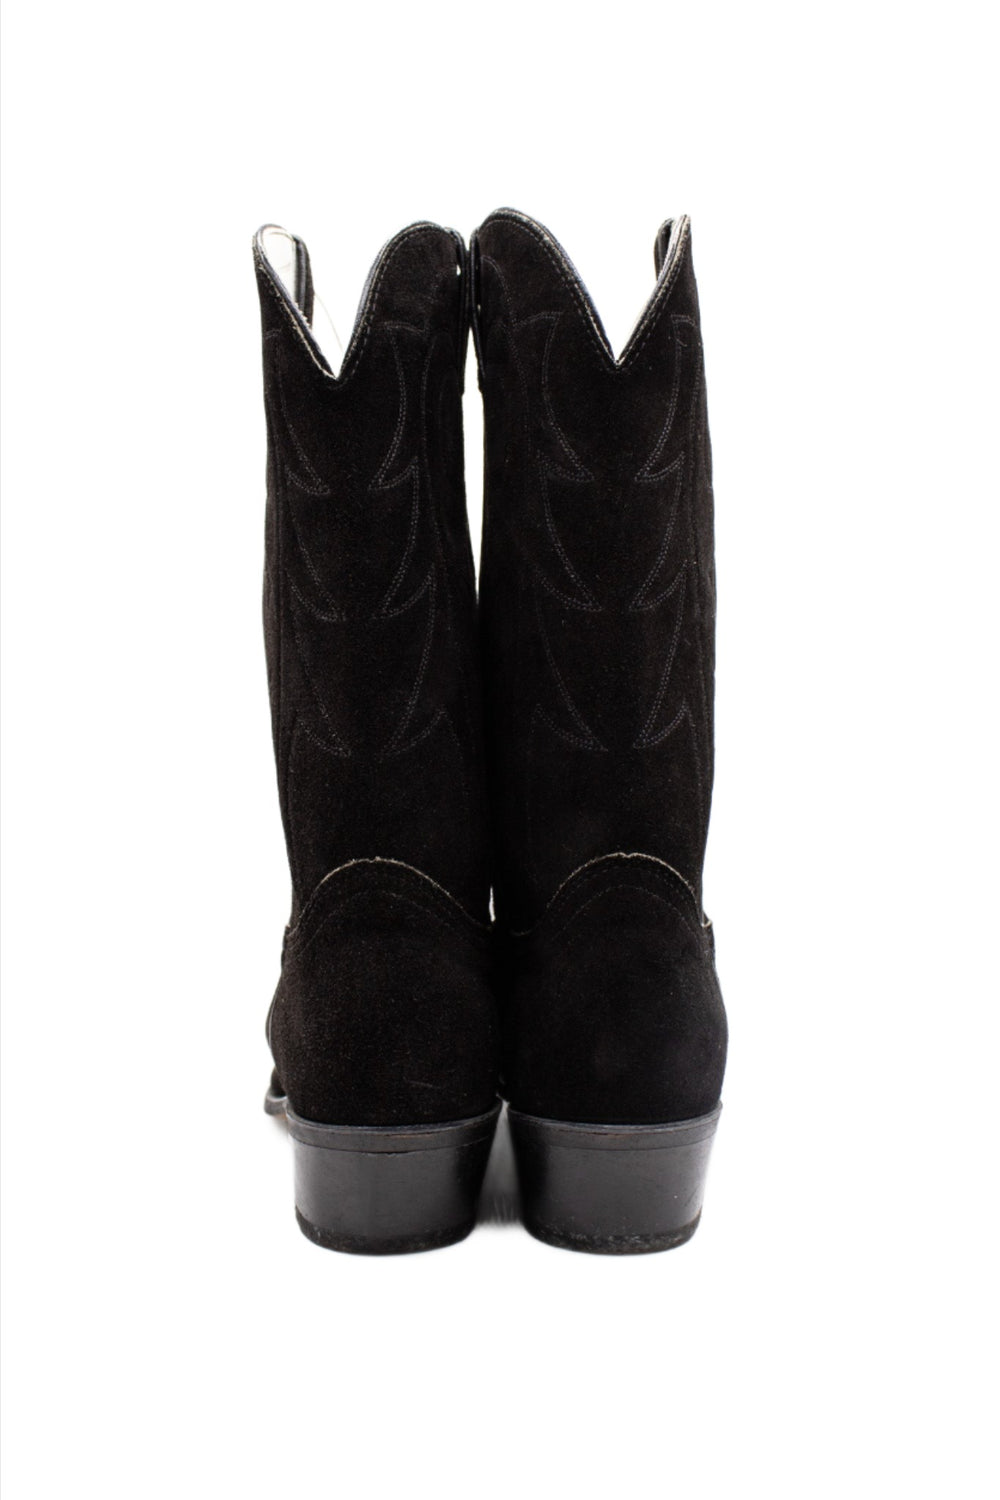 Durango Black Suede Cowboy Boots